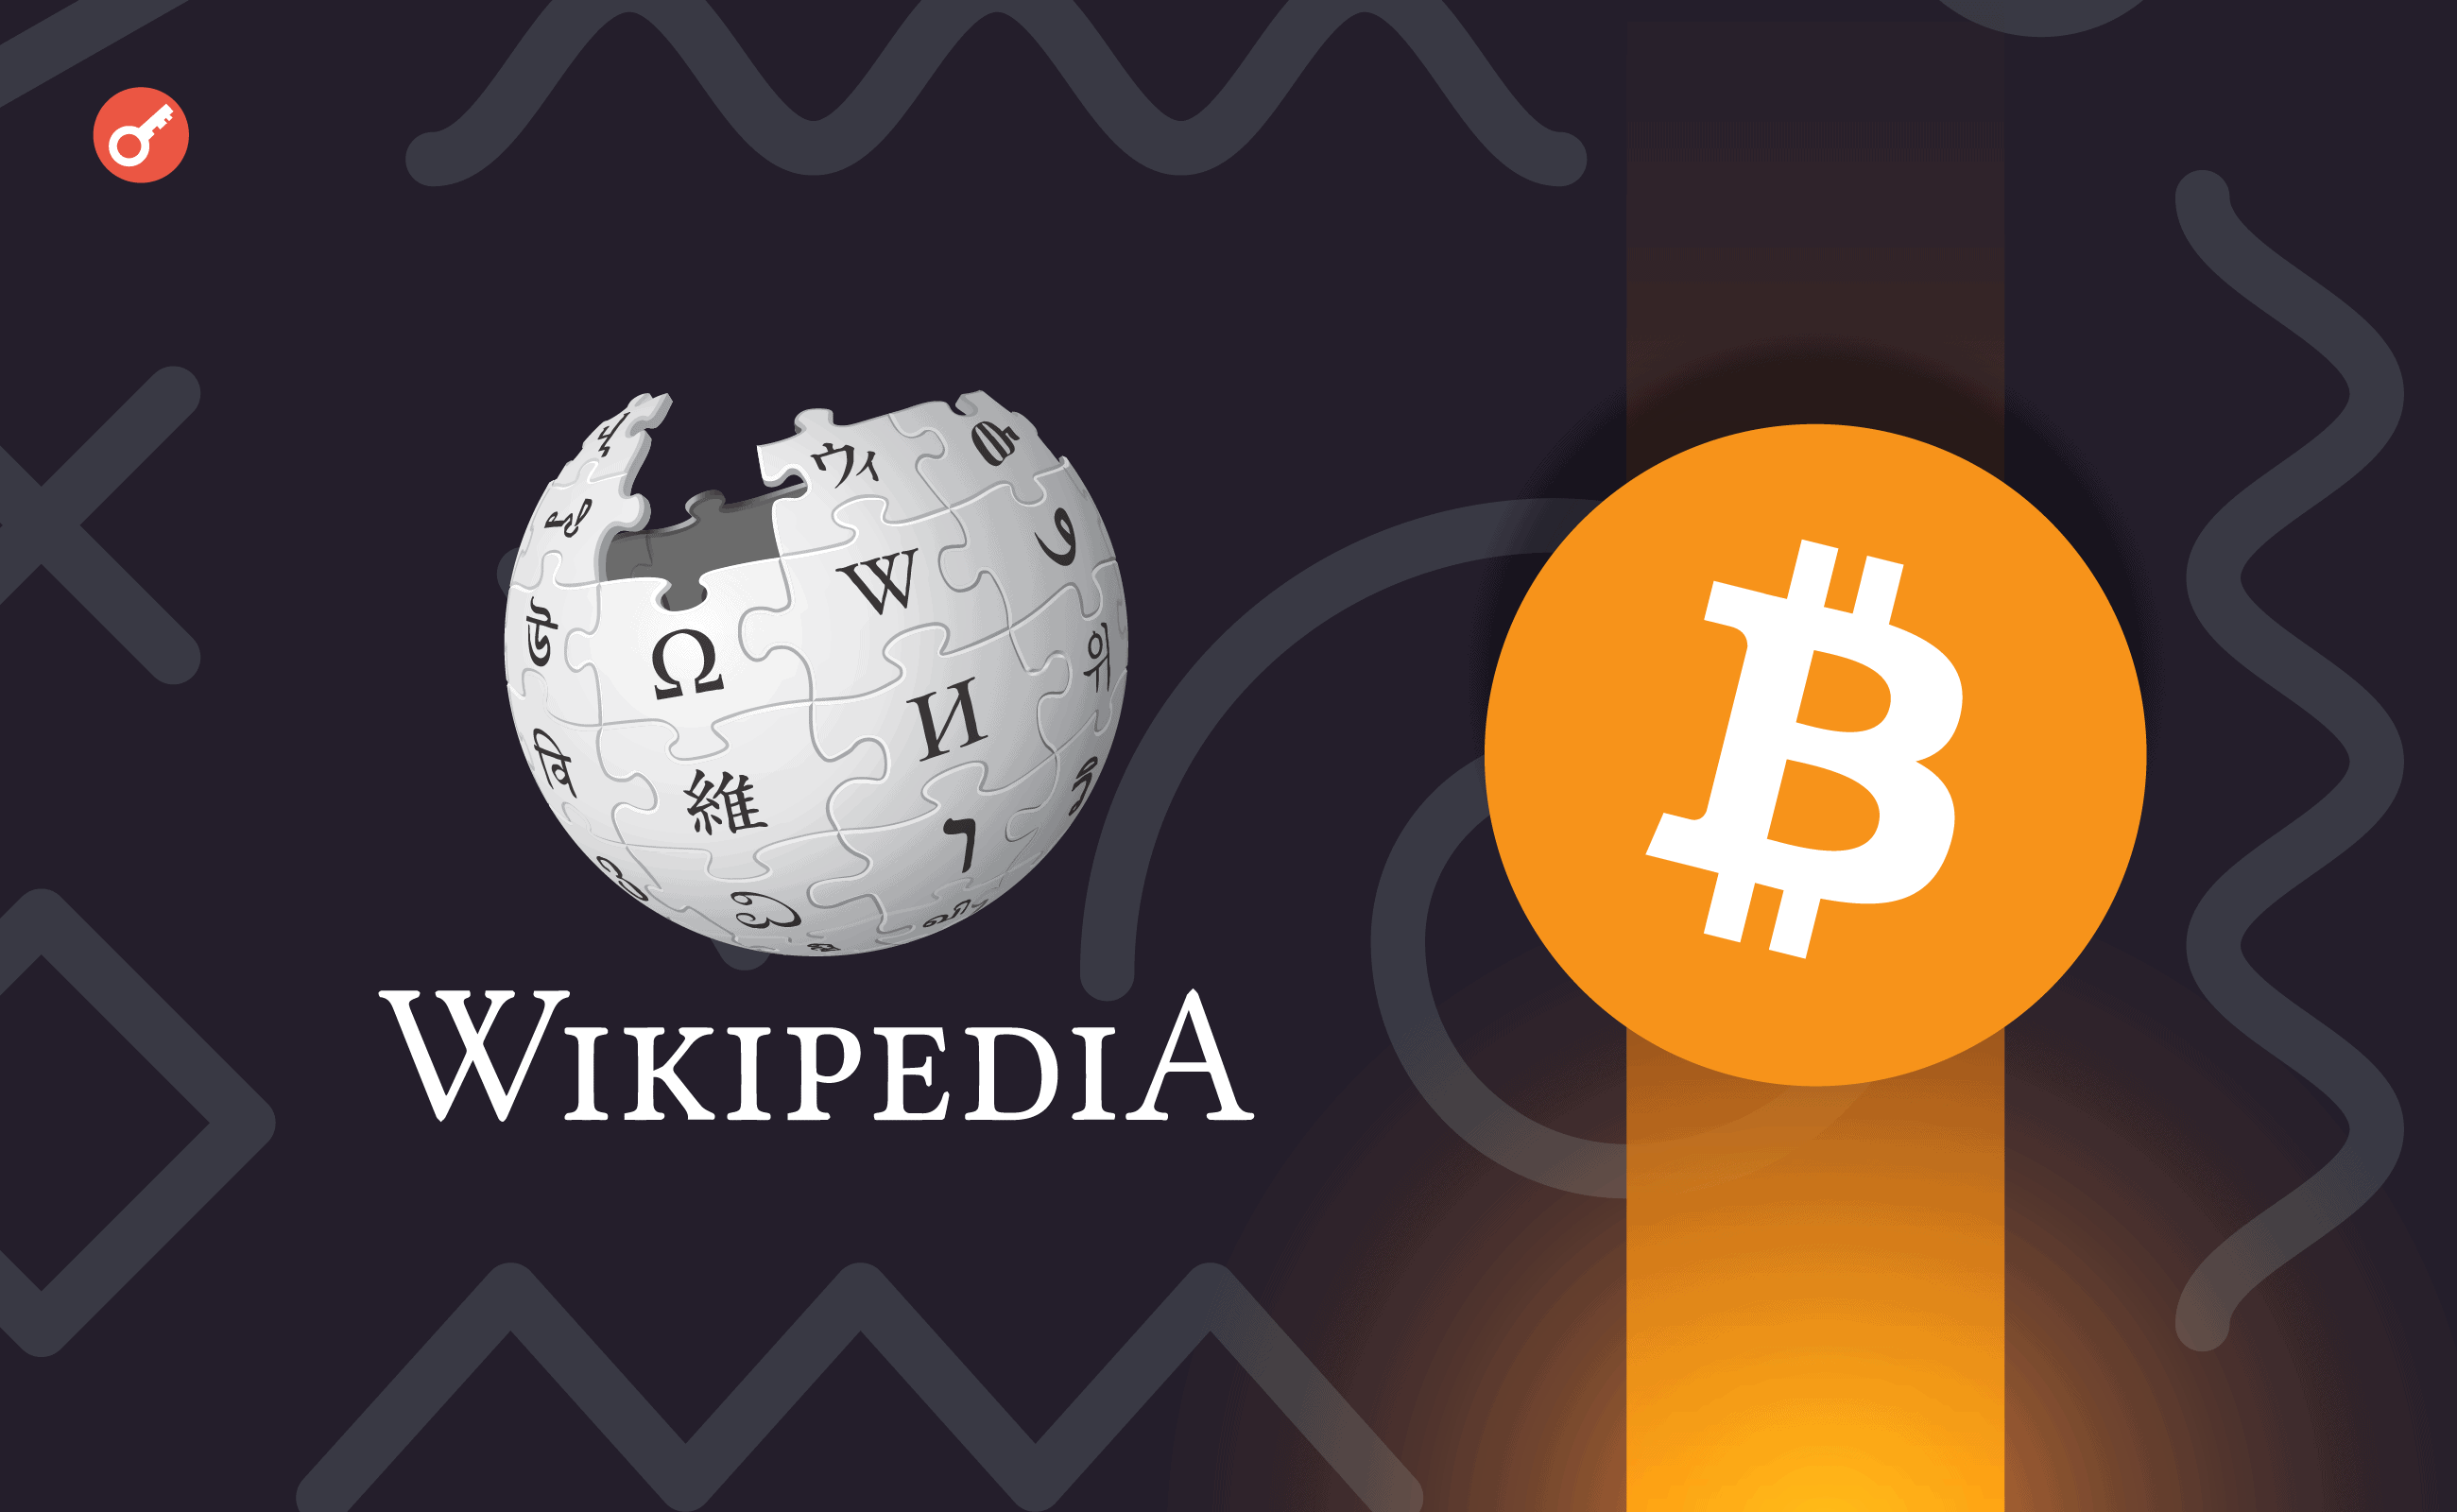 Співзасновник «Вікіпедії» розкритикував біткоїн. Головний колаж новини.